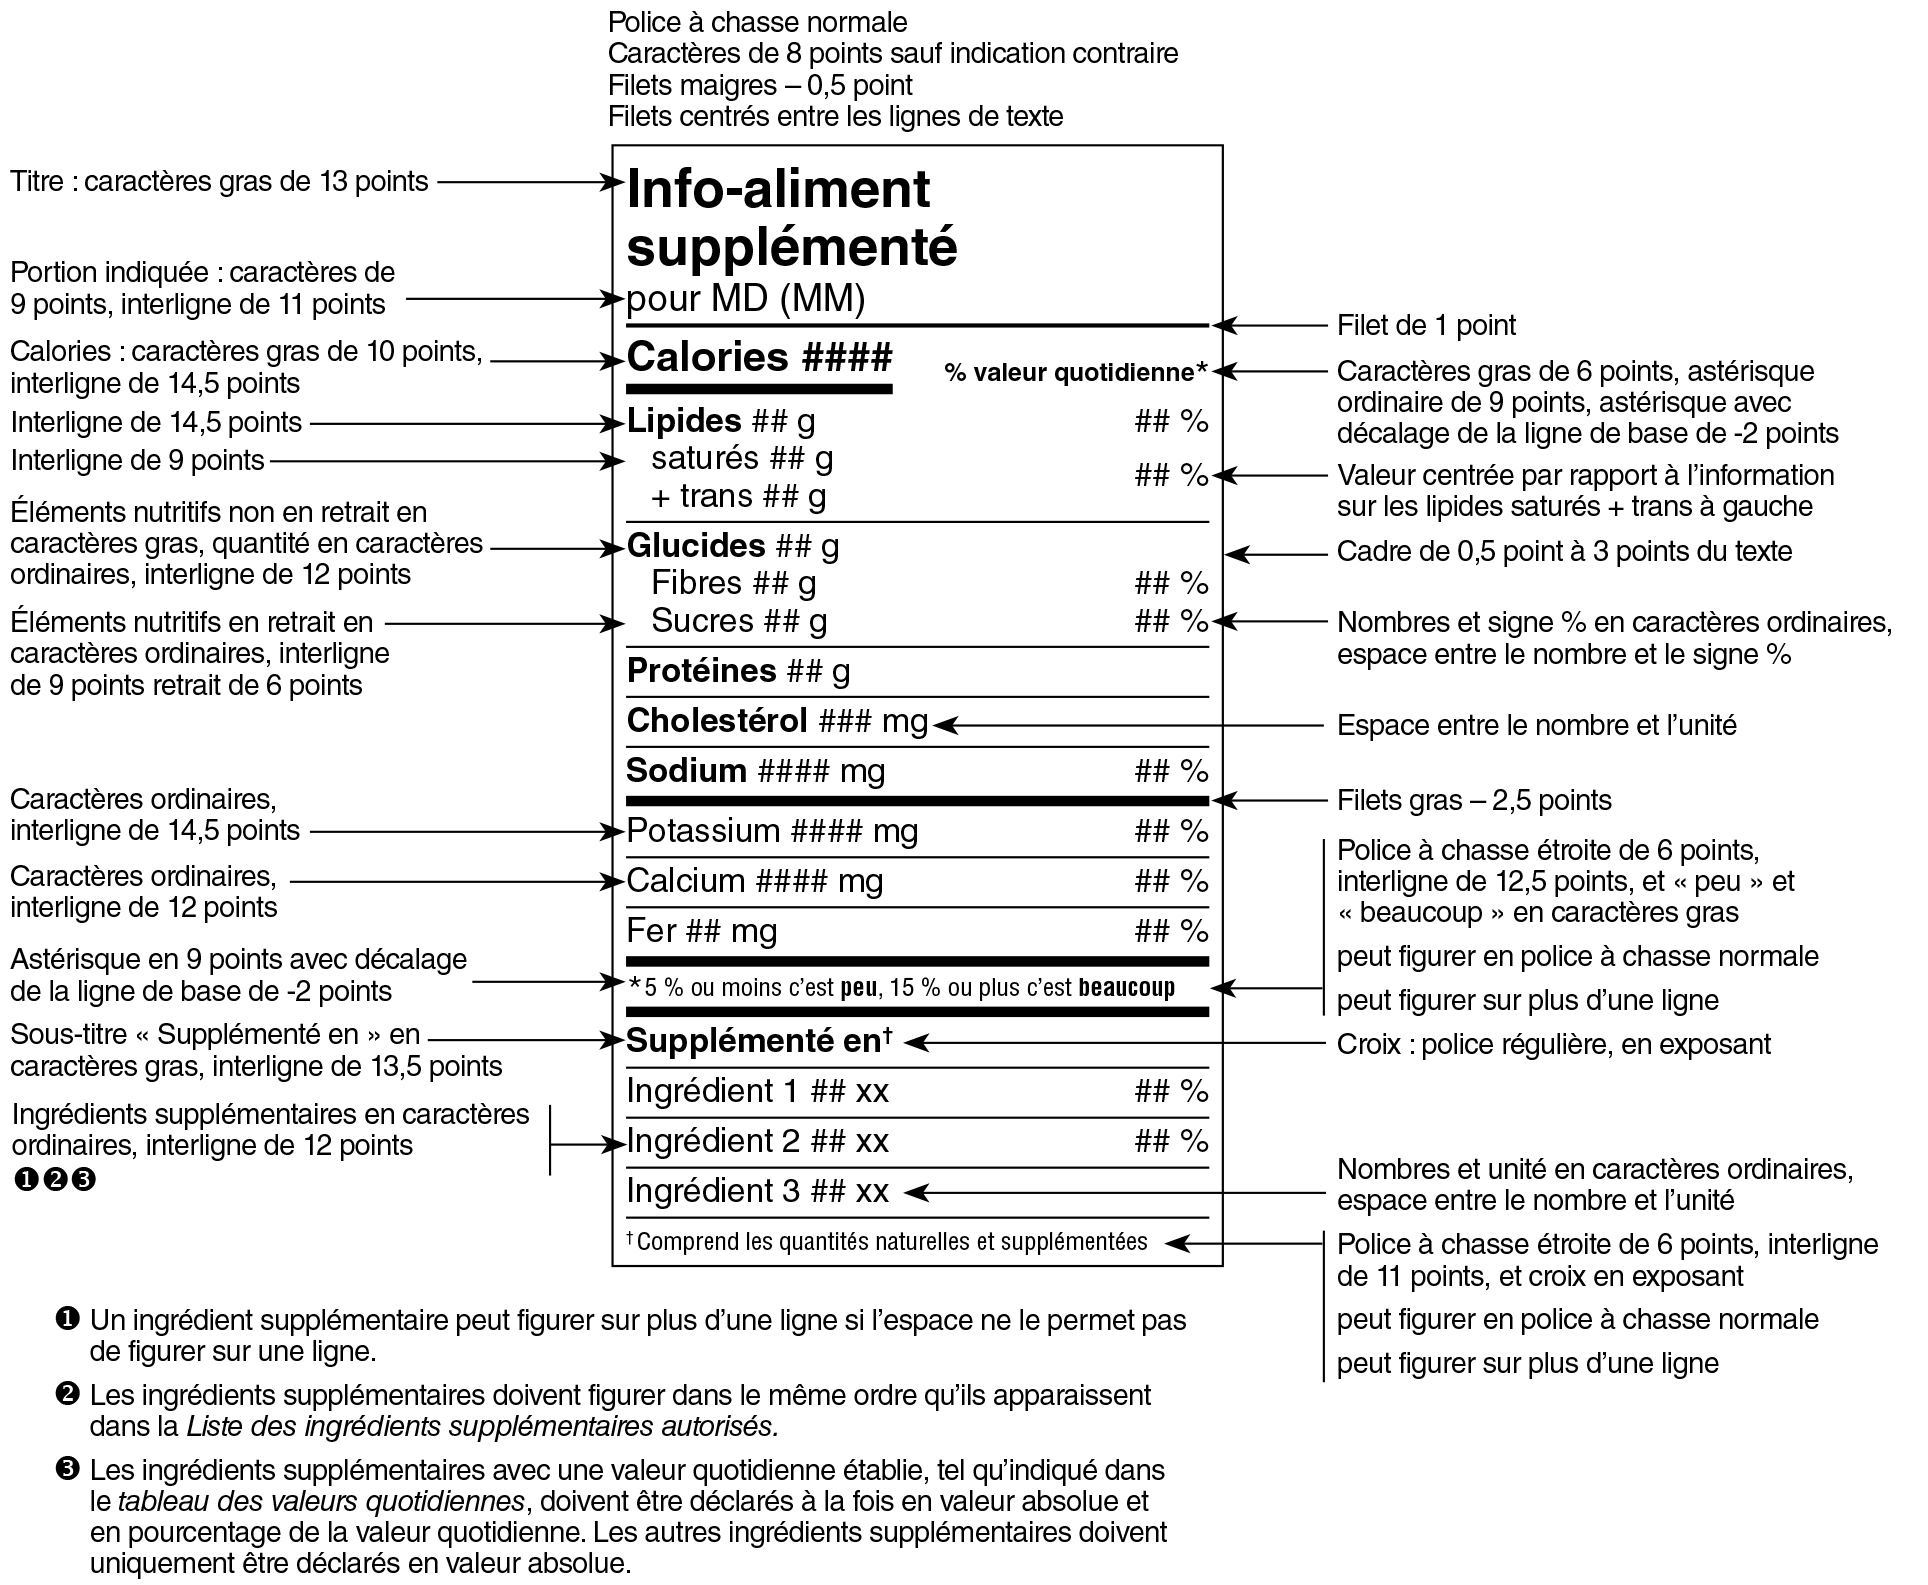 Modèle standard français du tableau des renseignements sur les aliments supplémentés avec indications. Version texte ci-dessous.